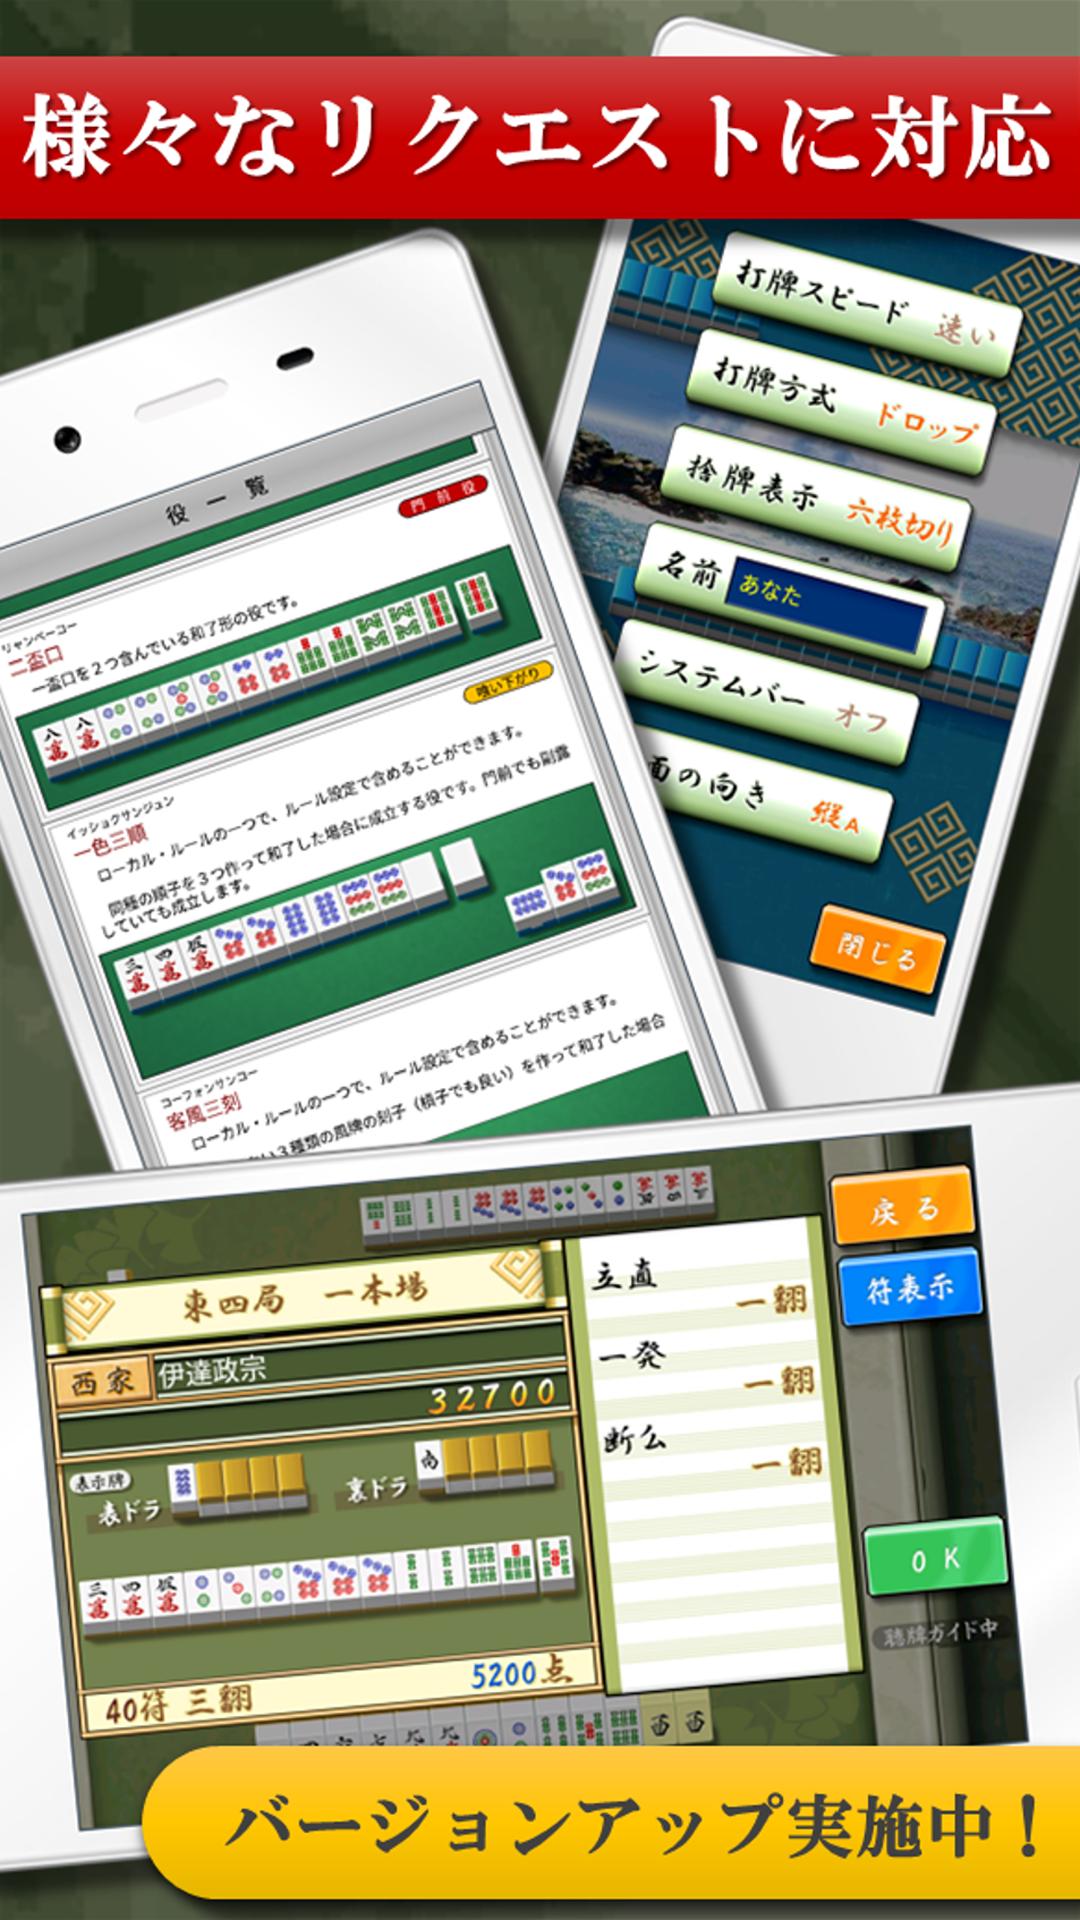 四人麻雀【公式】 4.18.0 Screenshot 5